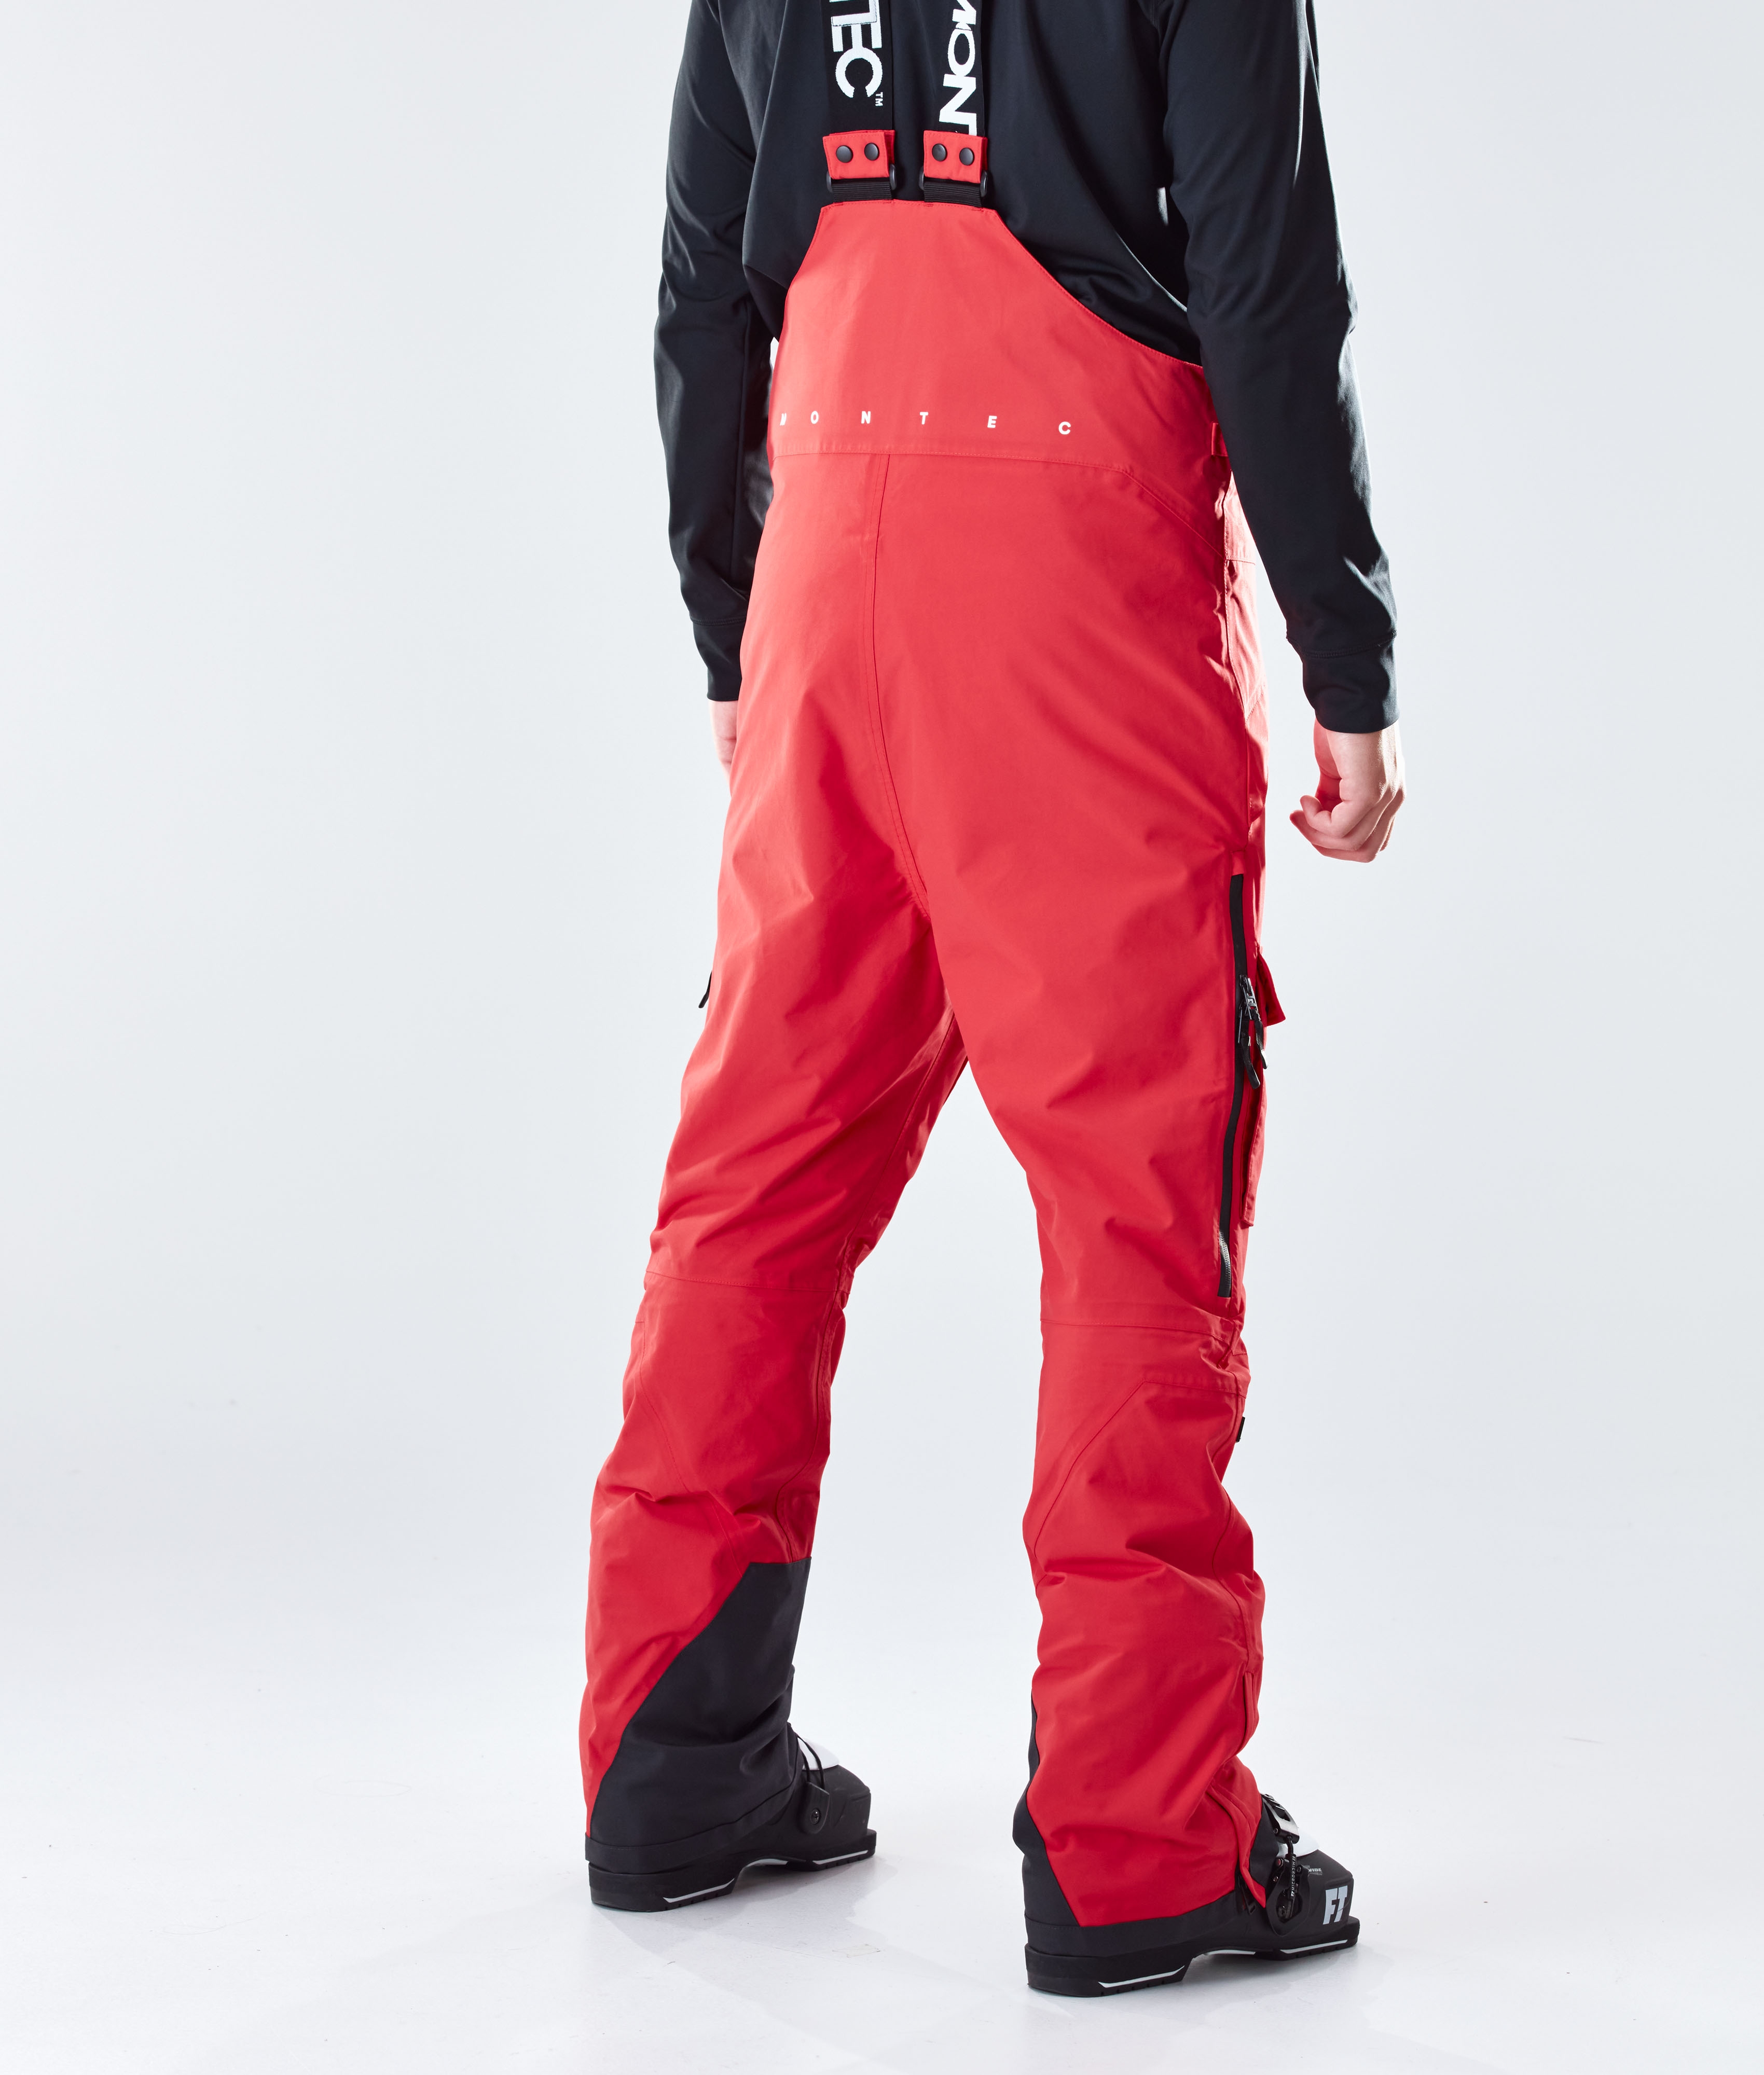 Montec Fawk 2020 スキーパンツ メンズ Red - 赤 | Montecwear.com